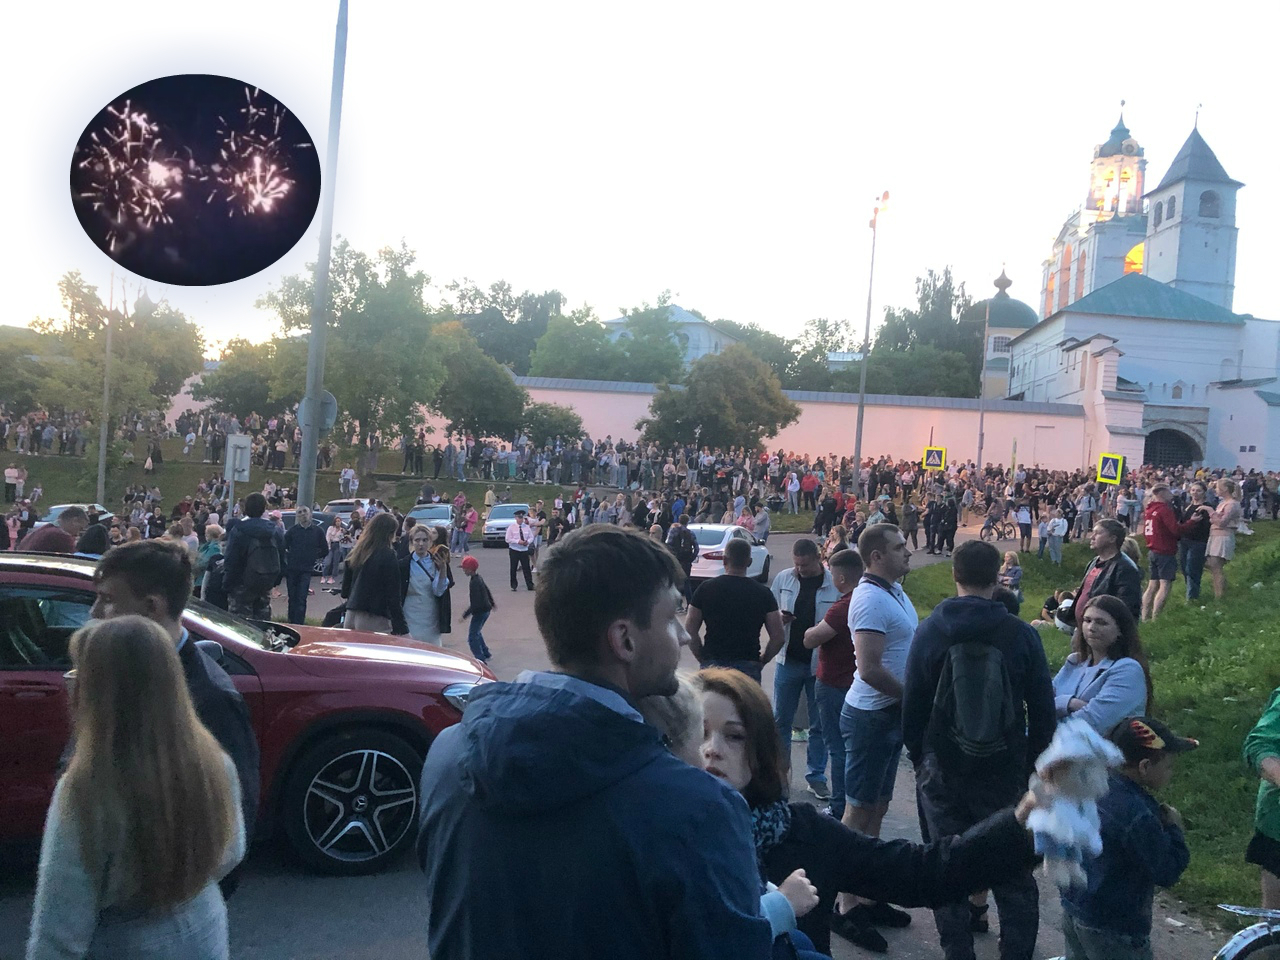 "Лучше бы доплаты": ярославцы раскритиковали праздничный салют в пандемию